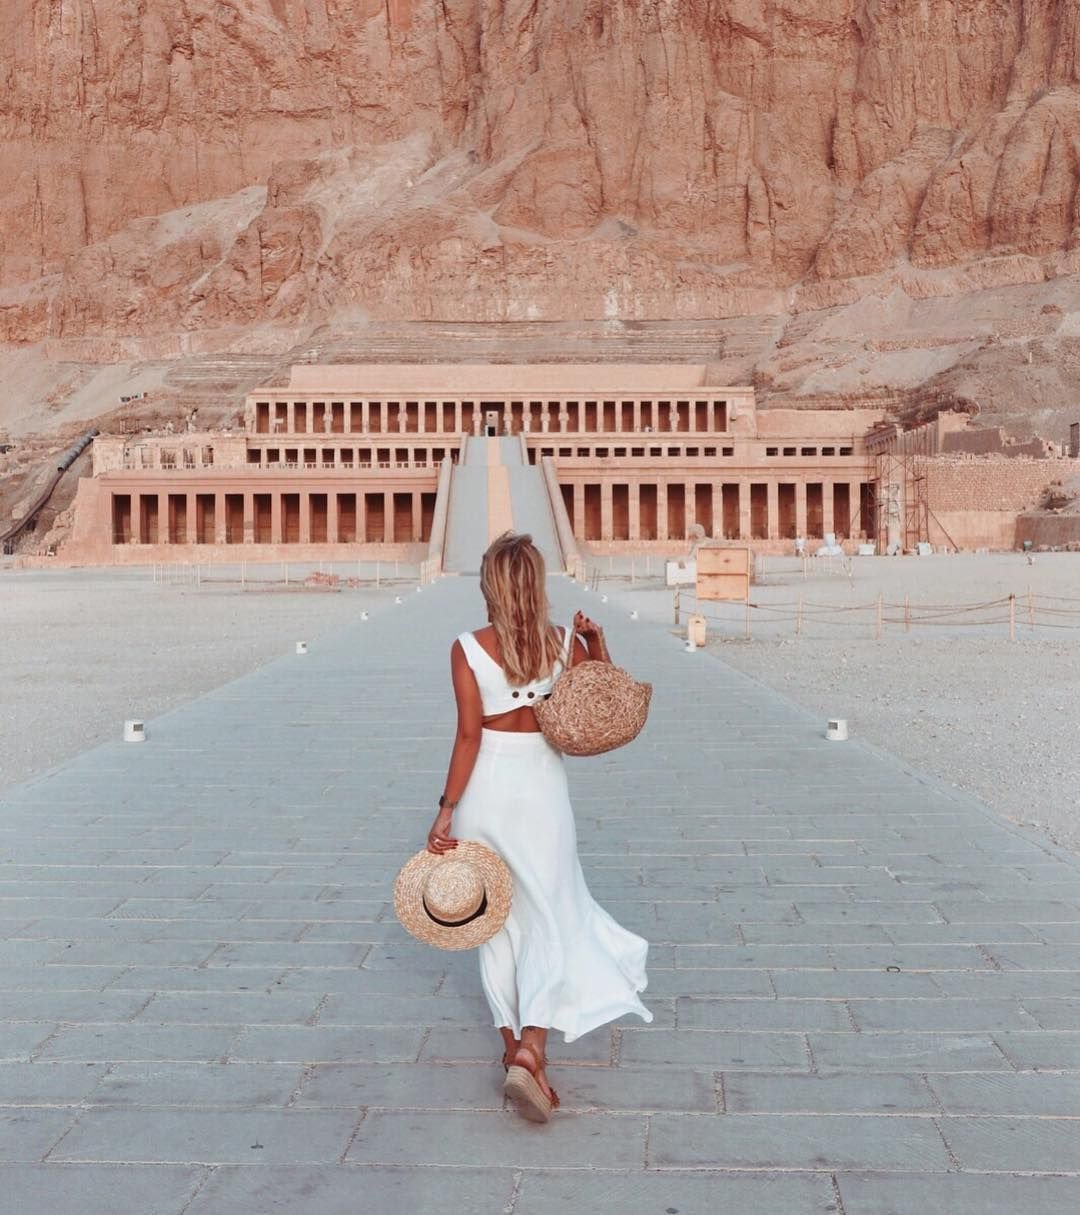 египет красивые фото инстаграм